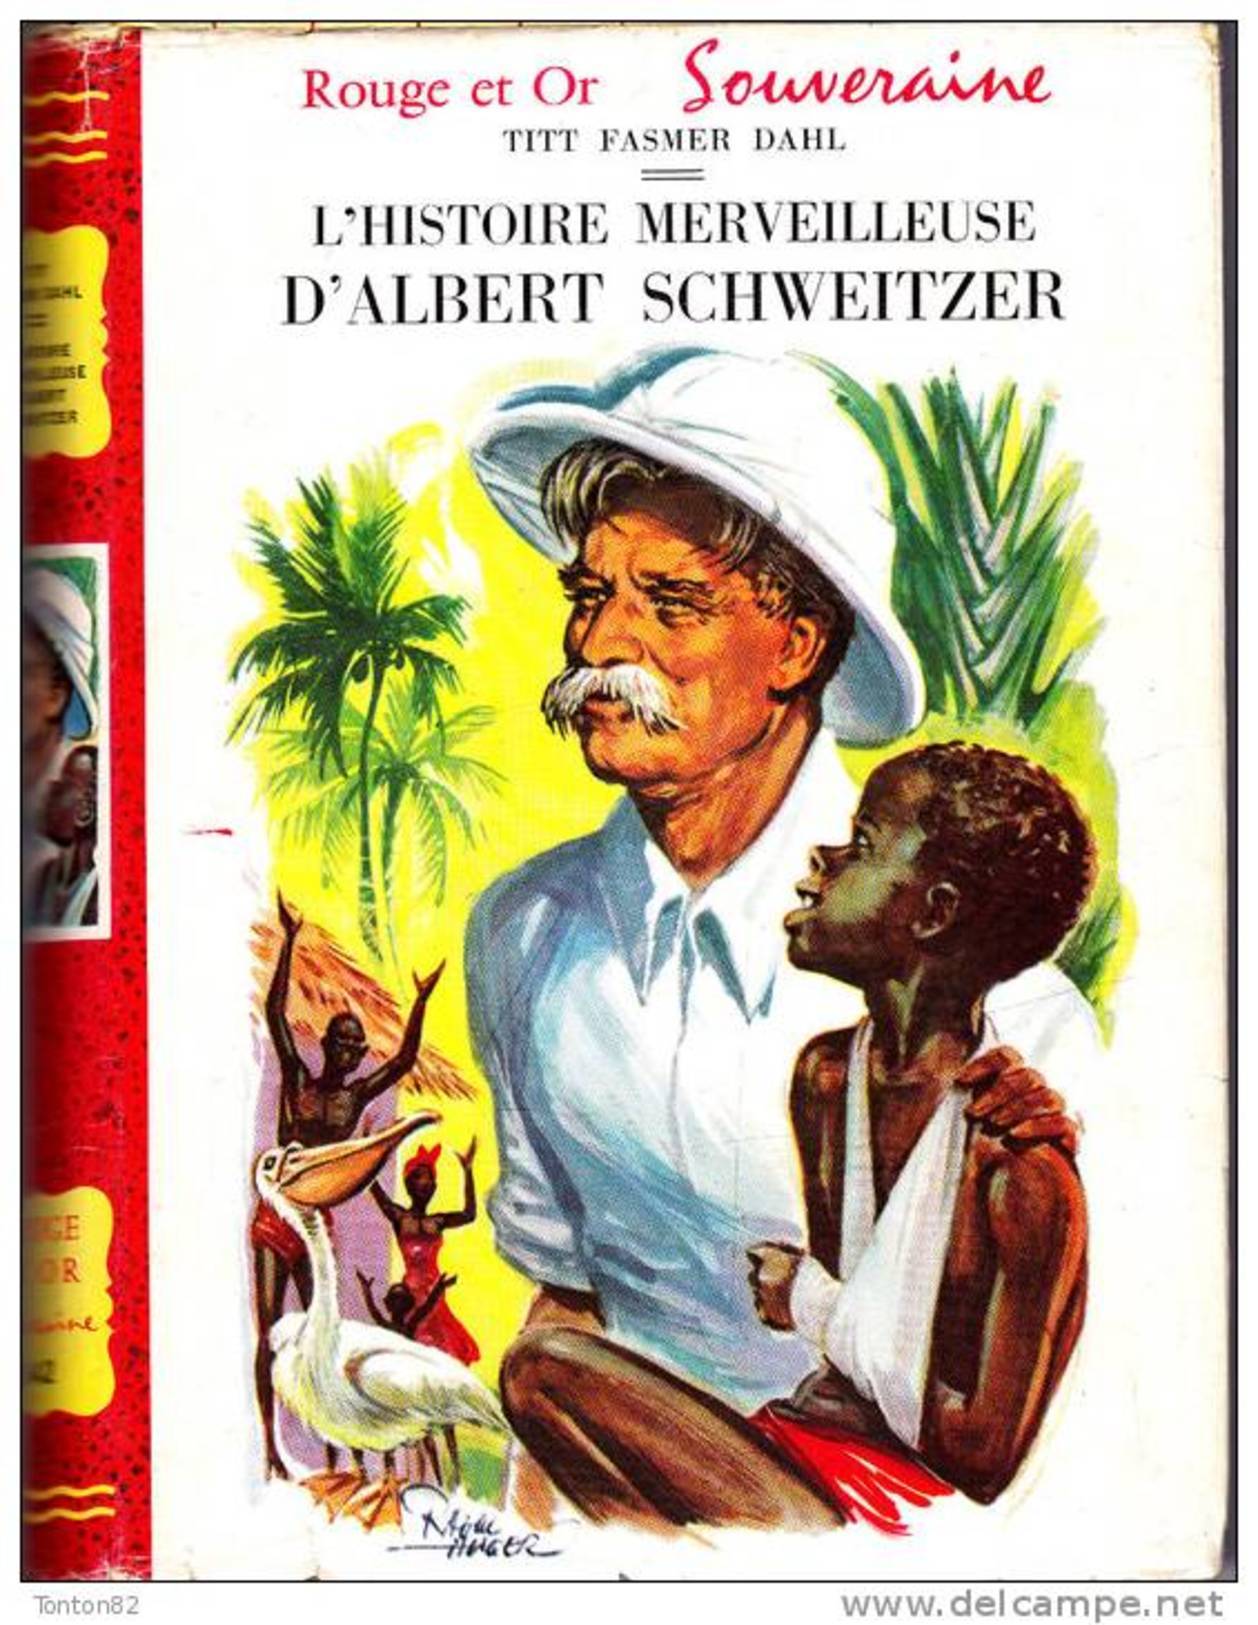 Titt Fasmer Dahl - L' Histoire Merveilleuse D' Albert Schweitzer - Rouge Et Or Souveraine - ( 1955 ) . - Bibliotheque Rouge Et Or